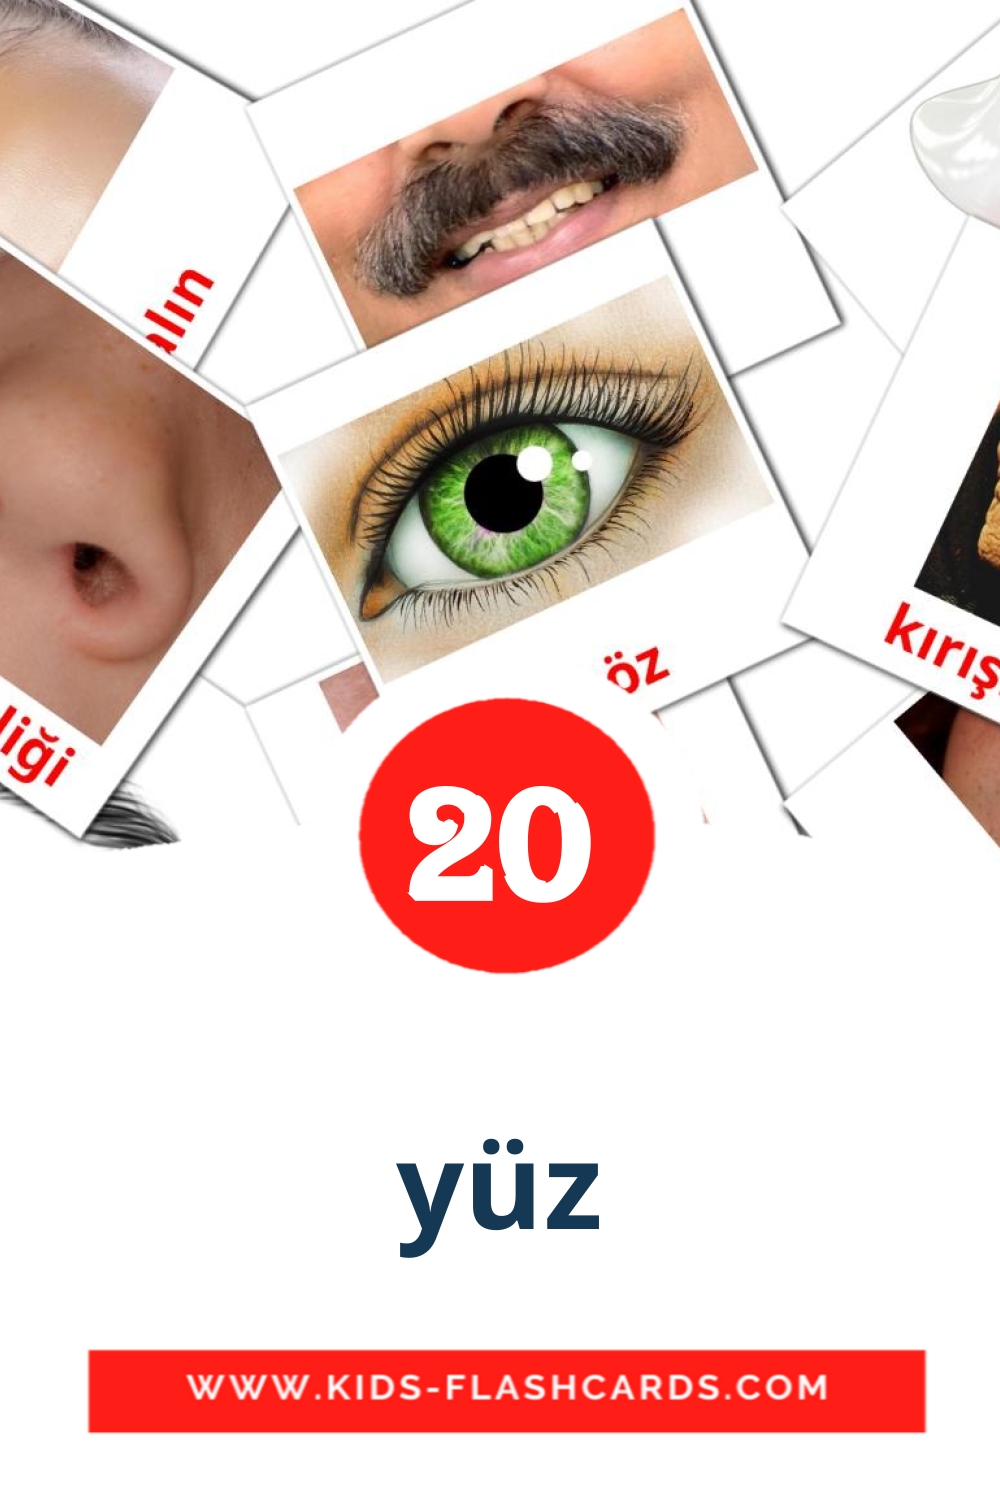 yüz на турецком для Детского Сада (20 карточек)